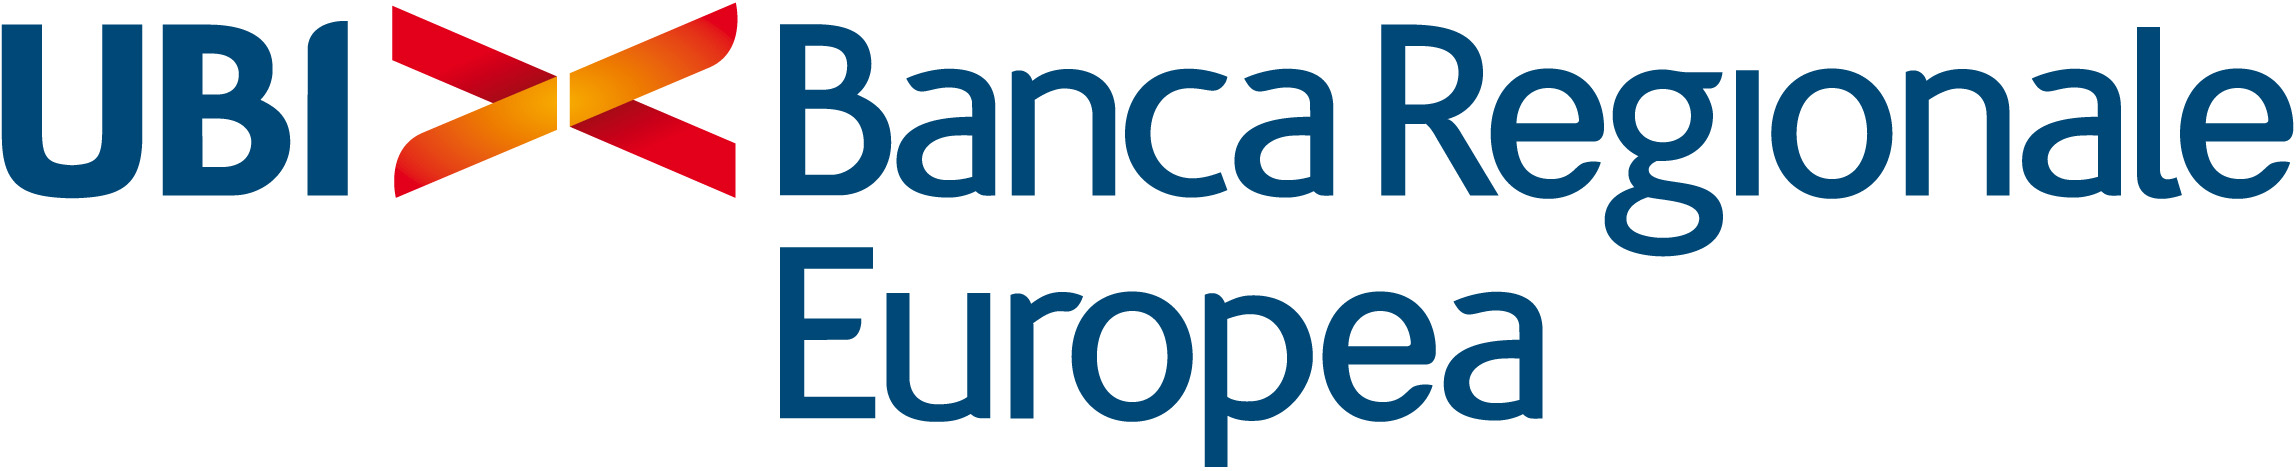 Banca Regionale Europea Logo photo - 1